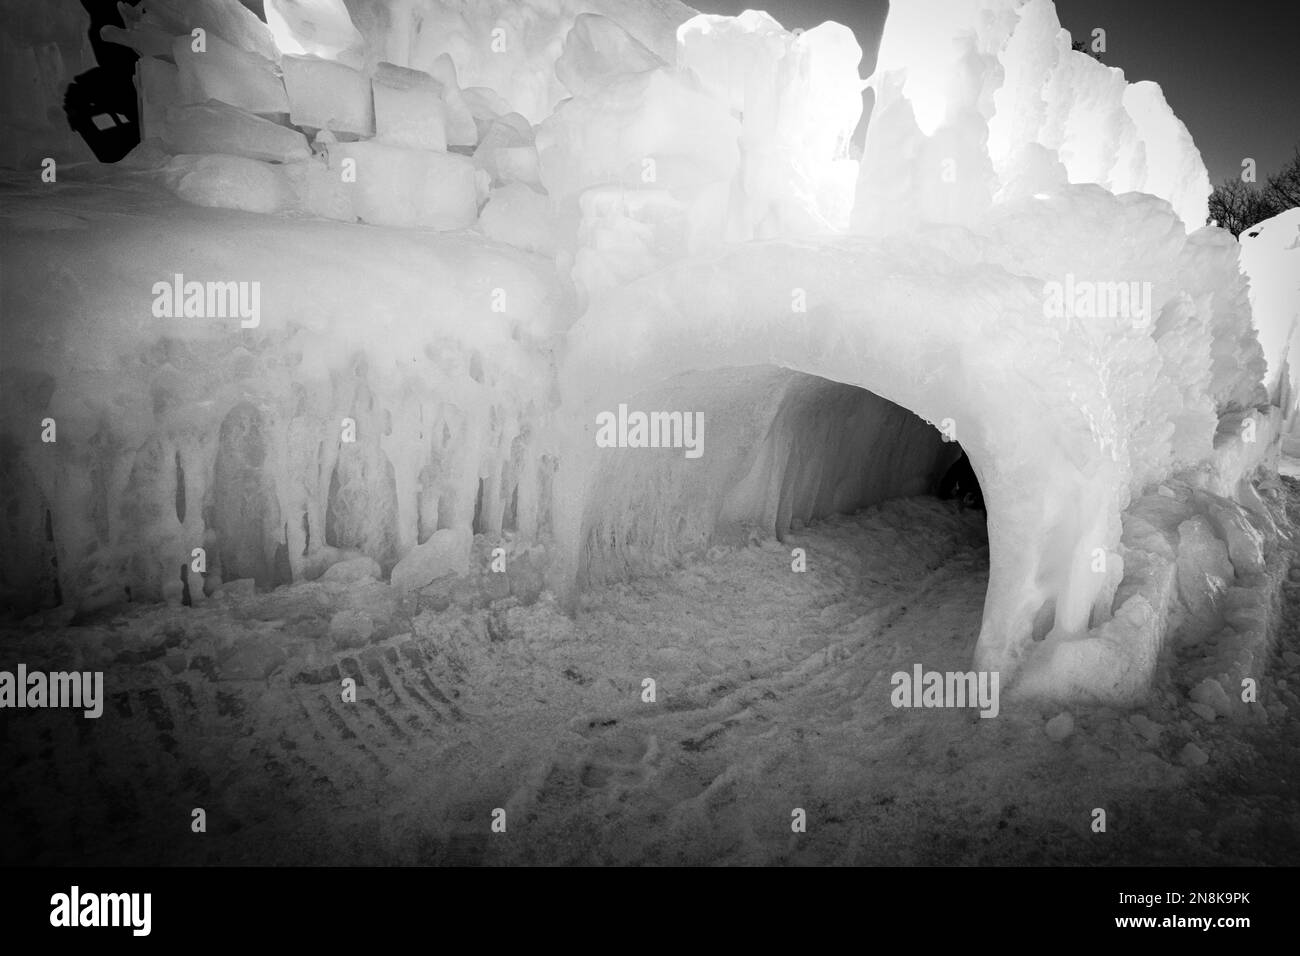 Das sind Eisstrukturen bei einem Wintereisfestival in Lake George. Diese Gänge sind durch dicke Eisschichten gemeist. Stockfoto